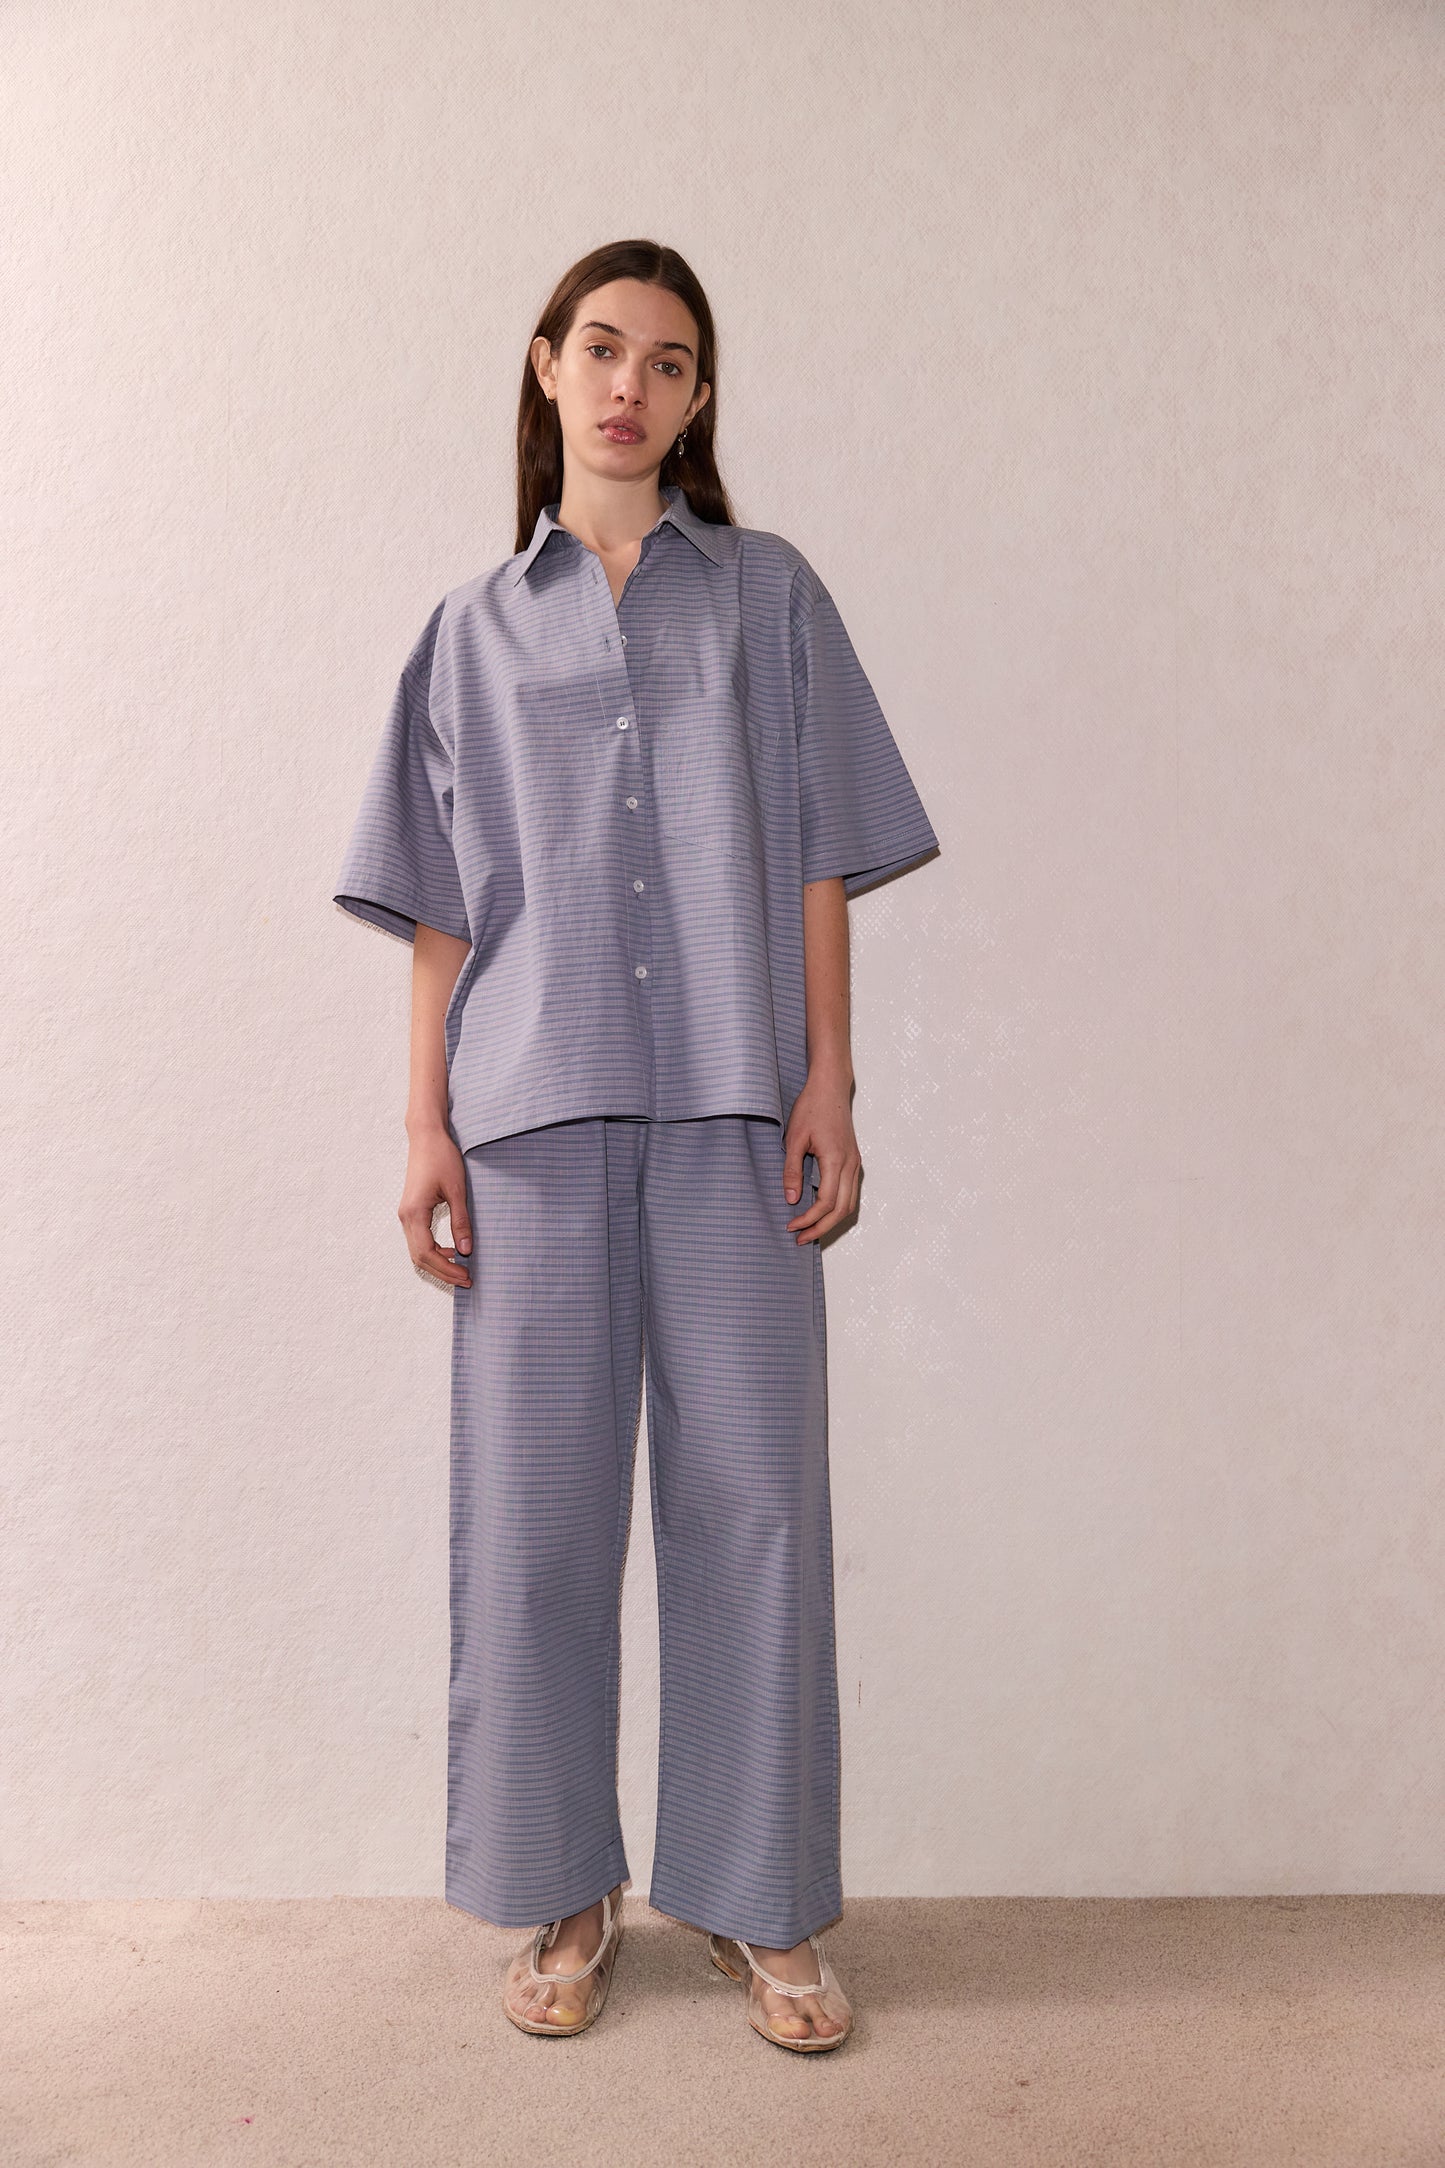 Female model wearing The Short Sleeve Shirt - Pillow Check by Deiji Studios against plain background